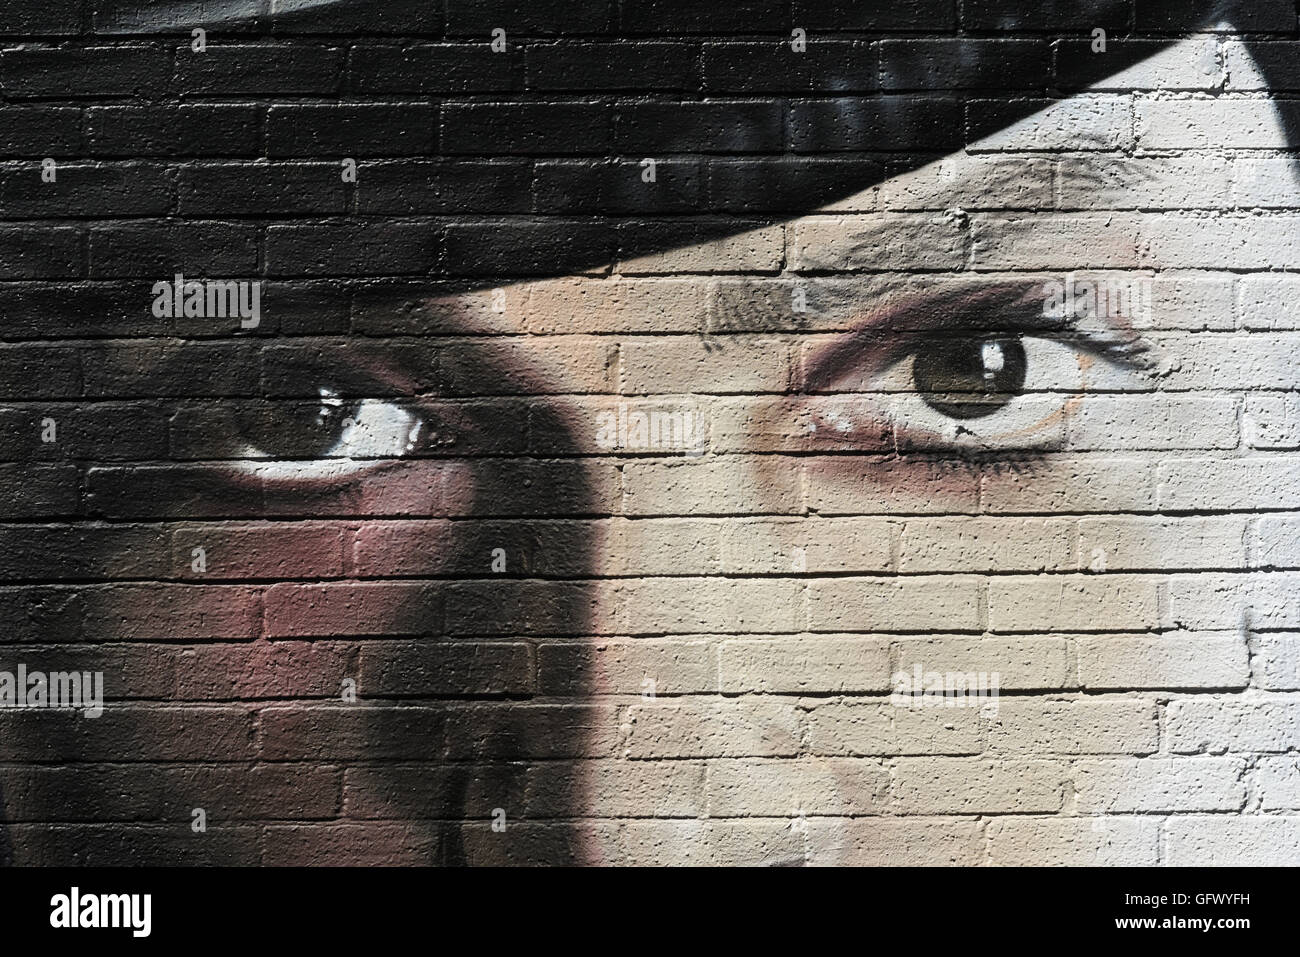 Il principe Artwork da AKSE. Northern Quarter. Manchester. grafitti art graffiti Foto Stock